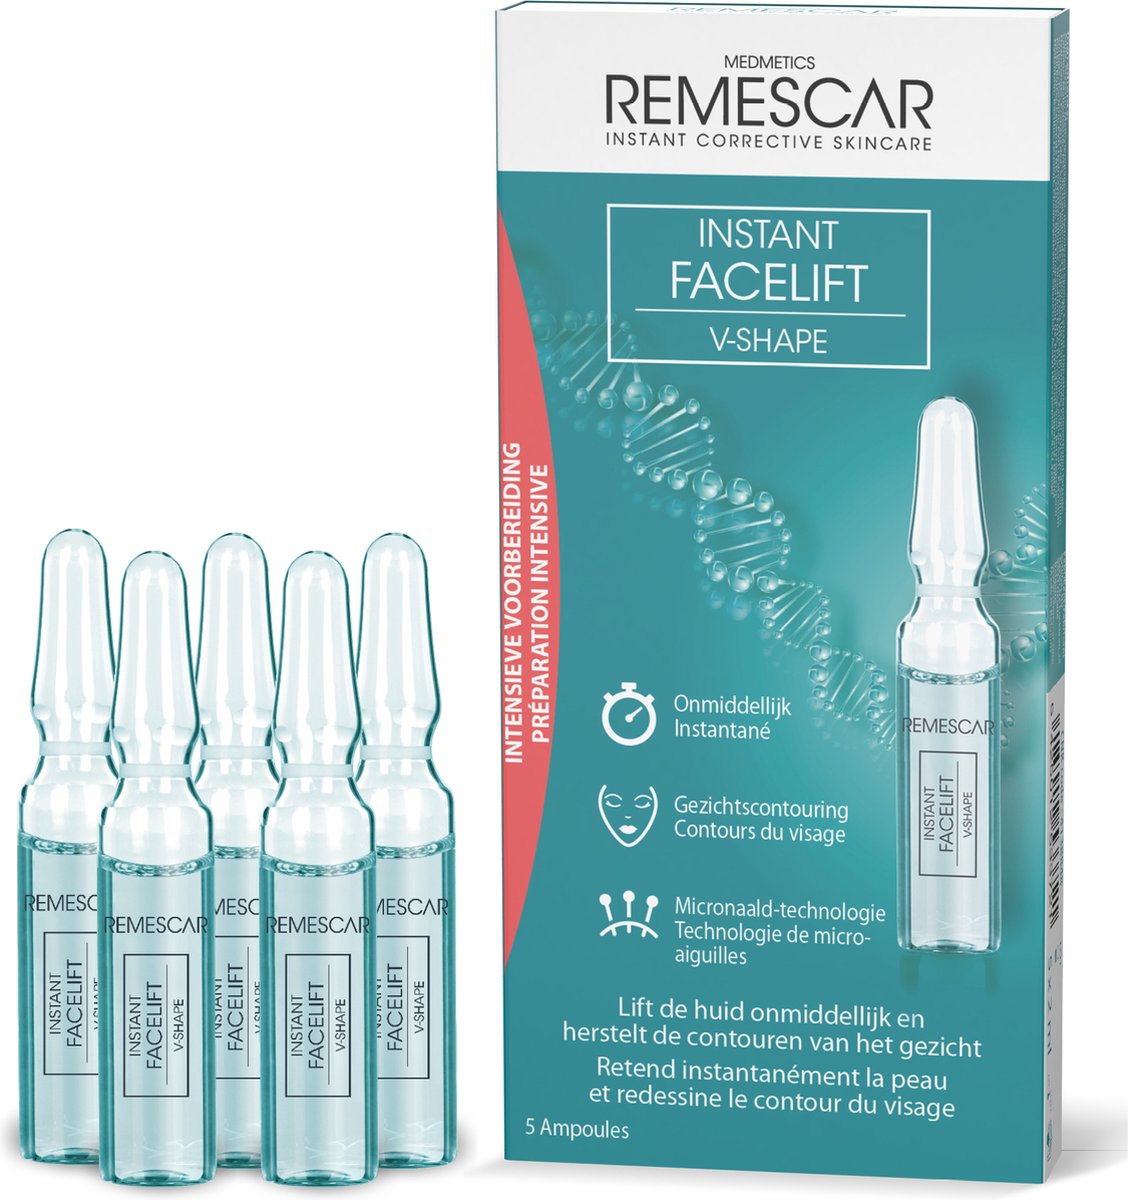 Remescar Instant Facelift V-shape gezicht - Alternatief voor kaaklijn trainer, Microneedling technologie met peptide om de huid te verstevigen, Gezicht contouring en rimpelvermindering met direct resultaat, 5 ampullen